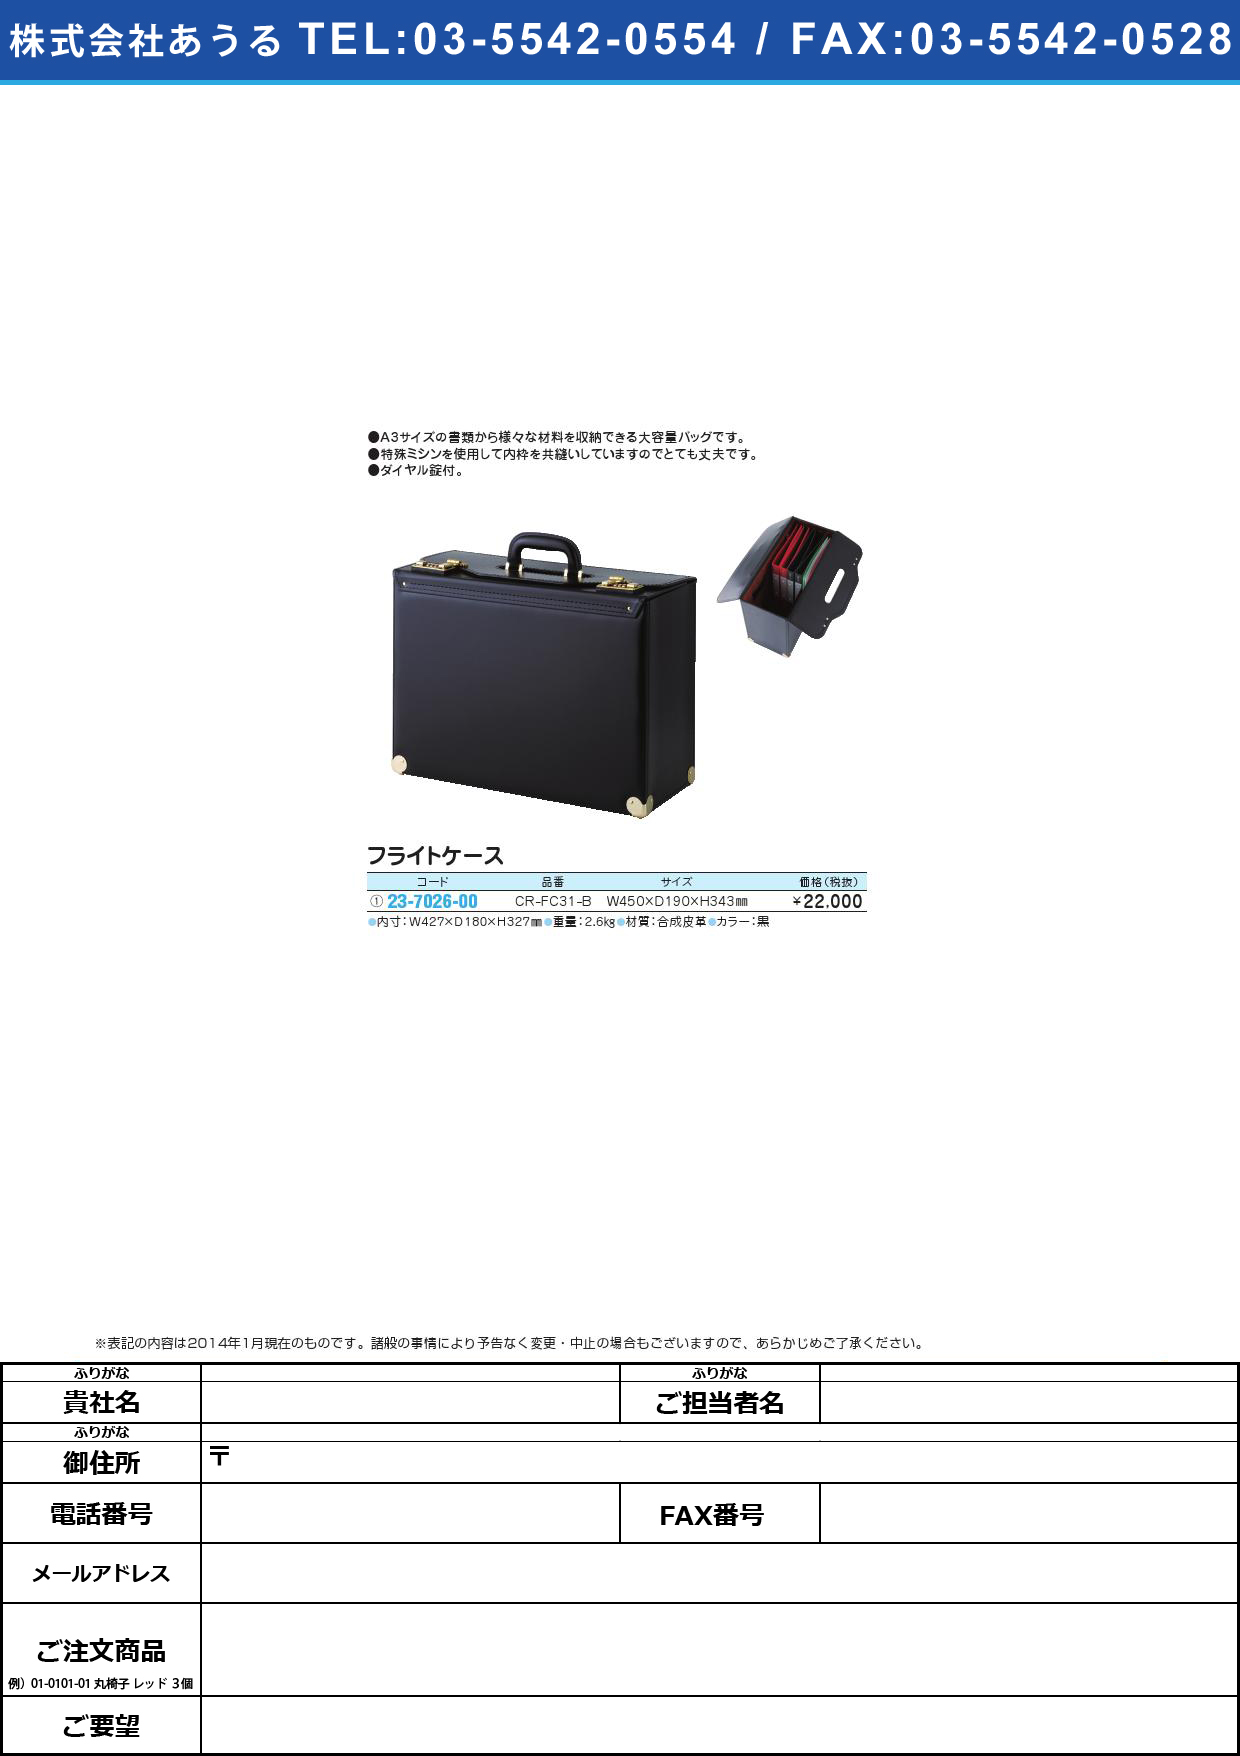 (23-7026-00)フライトケース ﾌﾗｲﾄｹｰｽ(23-7026-00)CR-FC31-B【1個単位】【2014年カタログ商品】